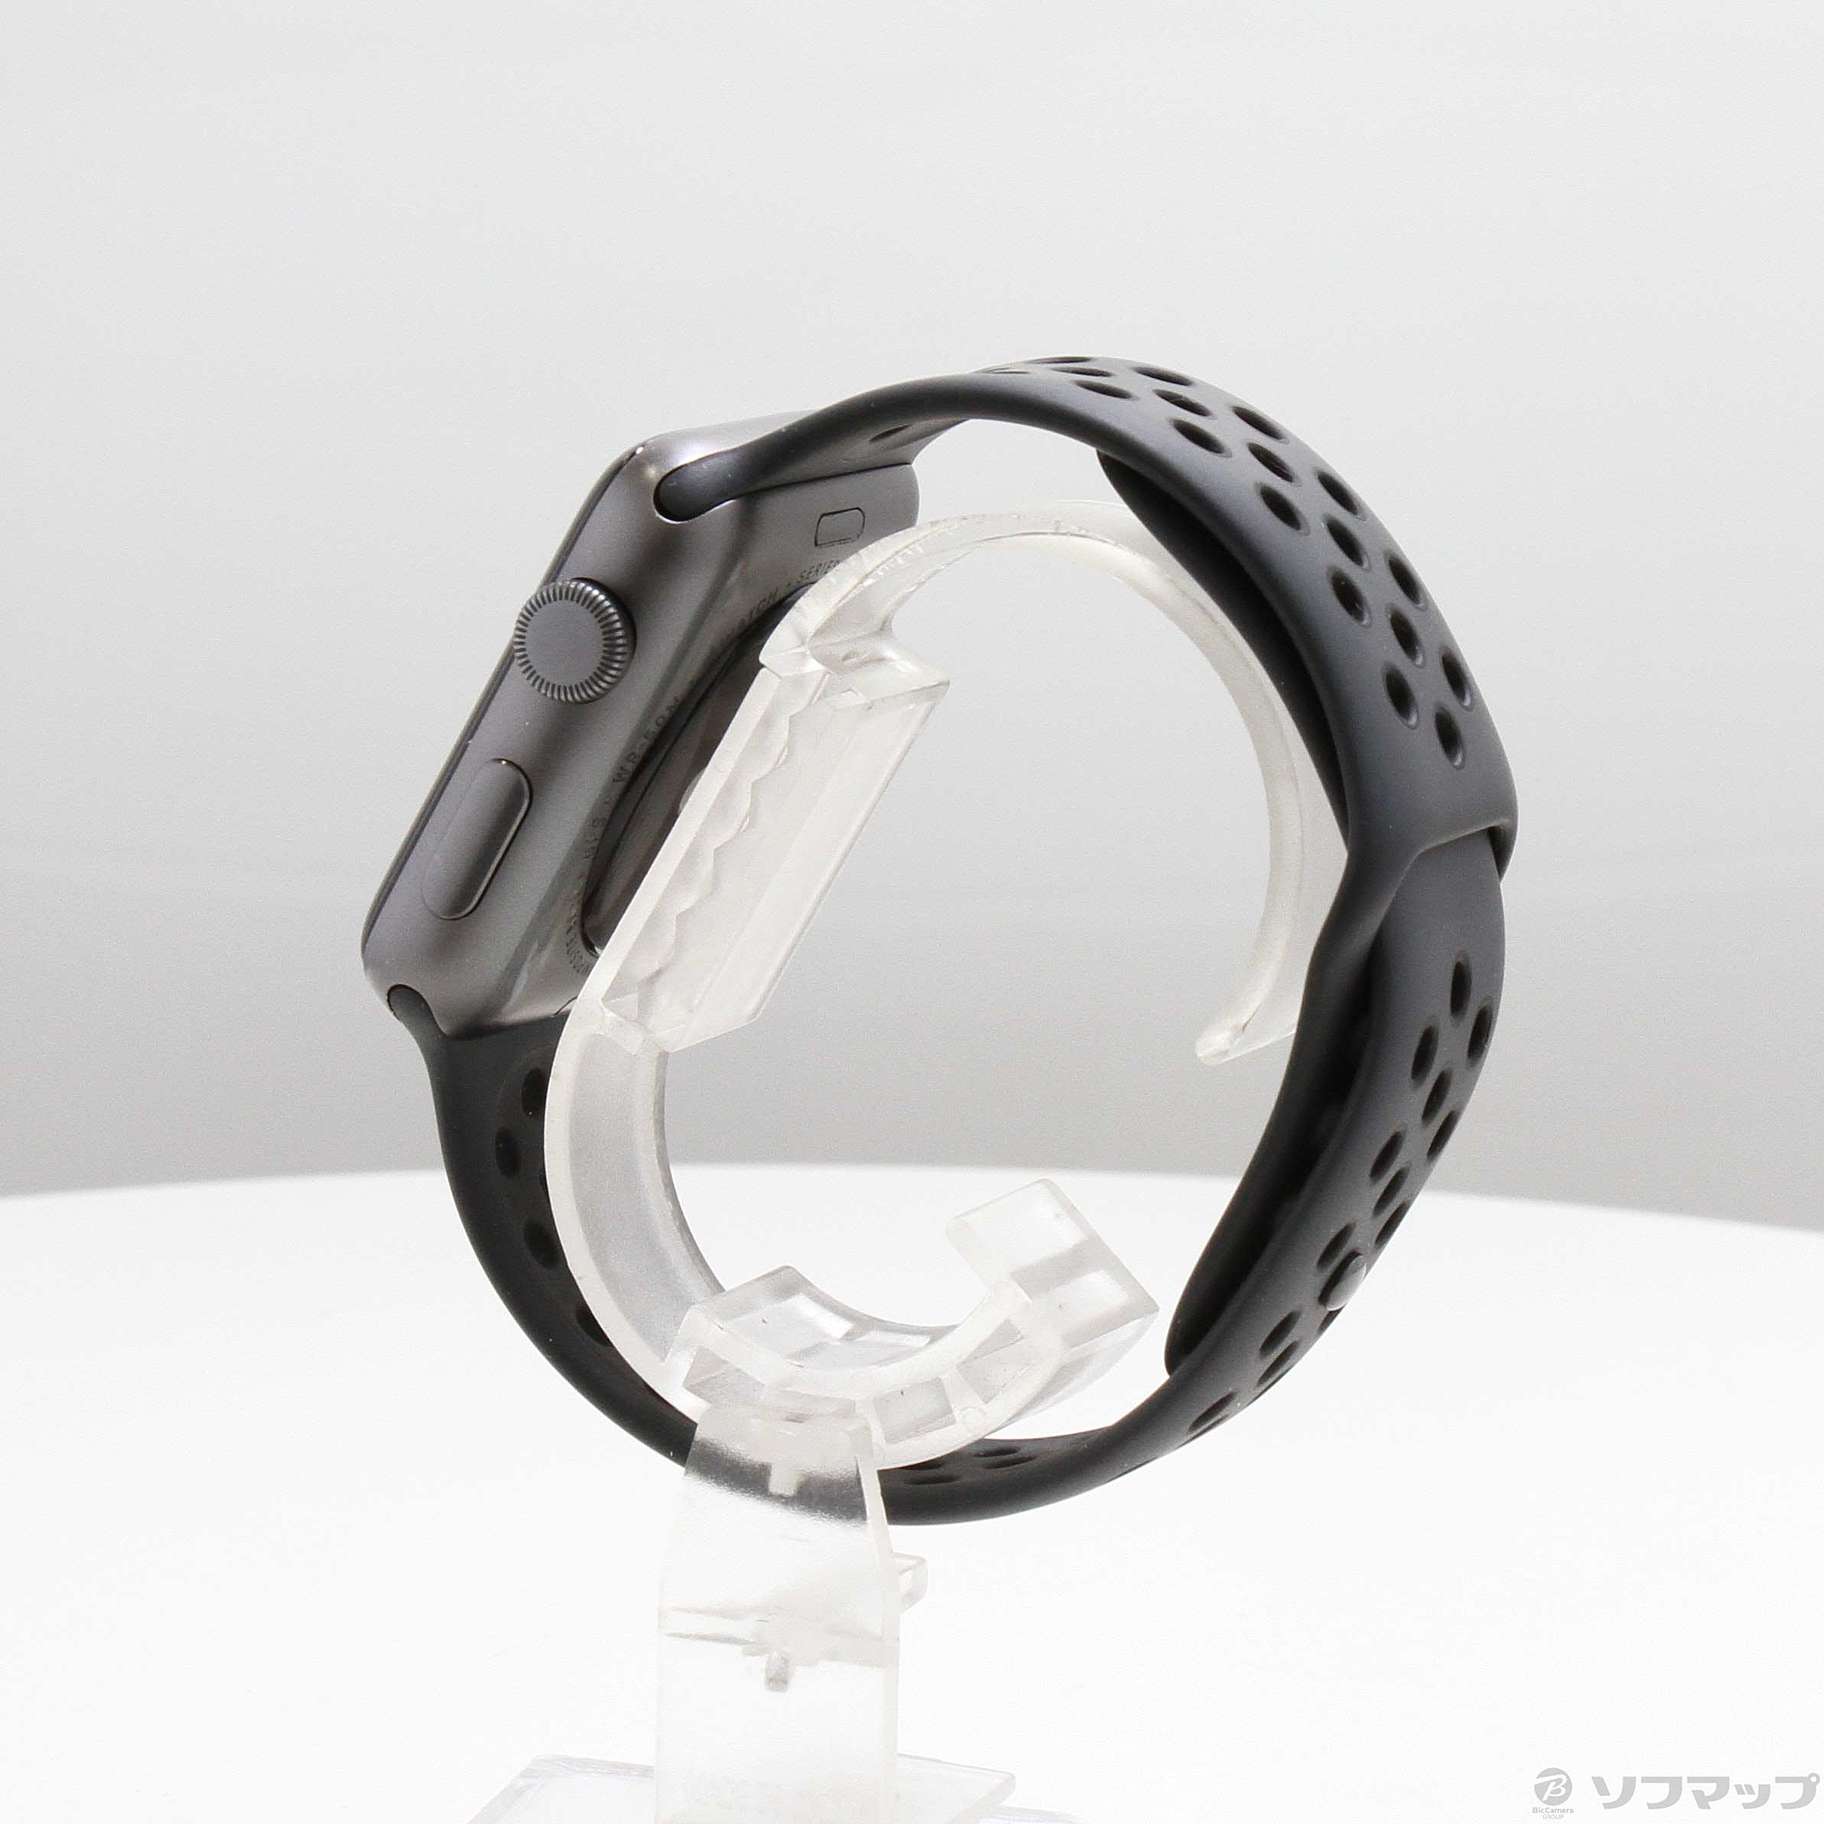 中古】Apple Watch Series 3 Nike+ GPS 42mm スペースグレイ